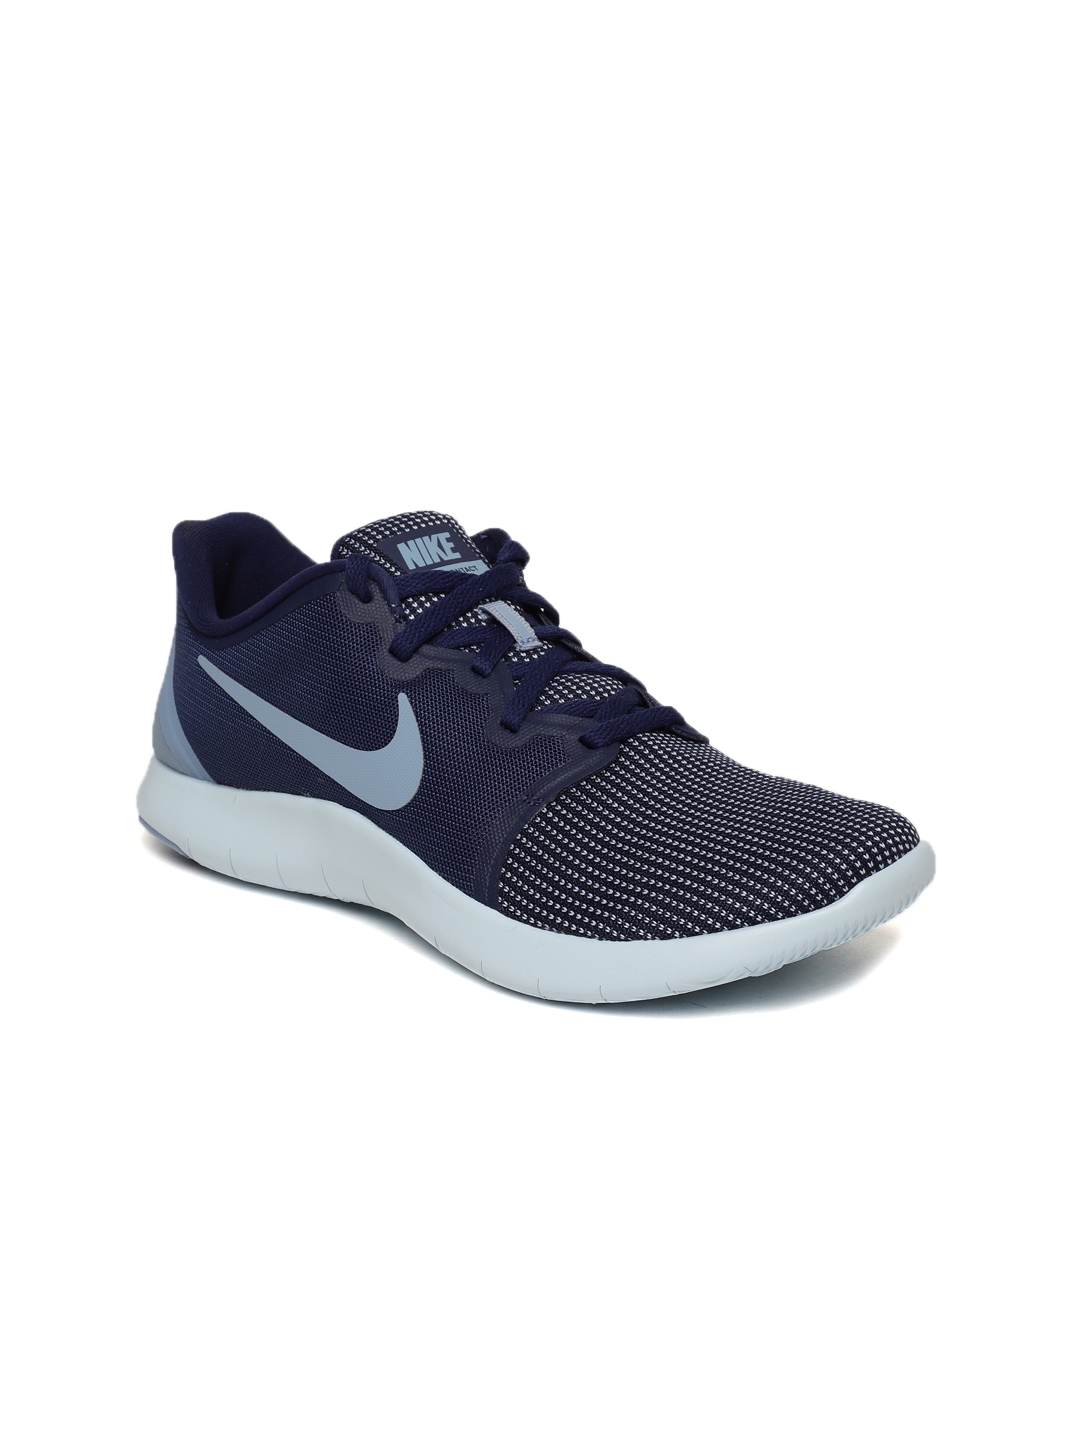 Buy Nike Women Navy Blue Flex Contact 2 Running Shoes - Sports Shoes